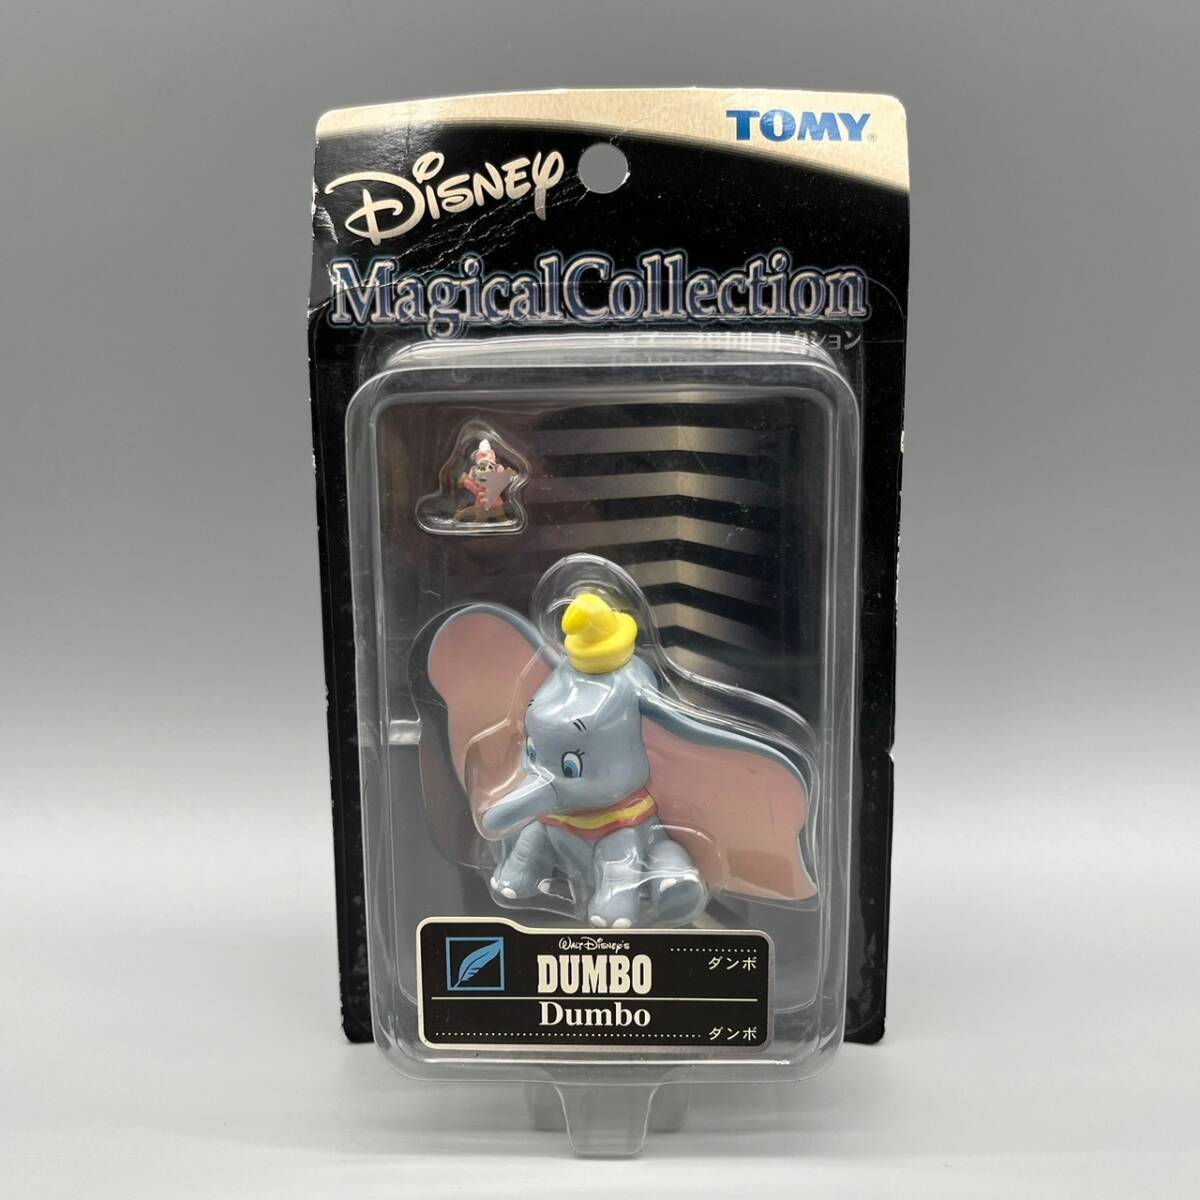 ディズニー Disney マジカルコレクション 037 ダンボ DUMBO トミー TOMYの画像1